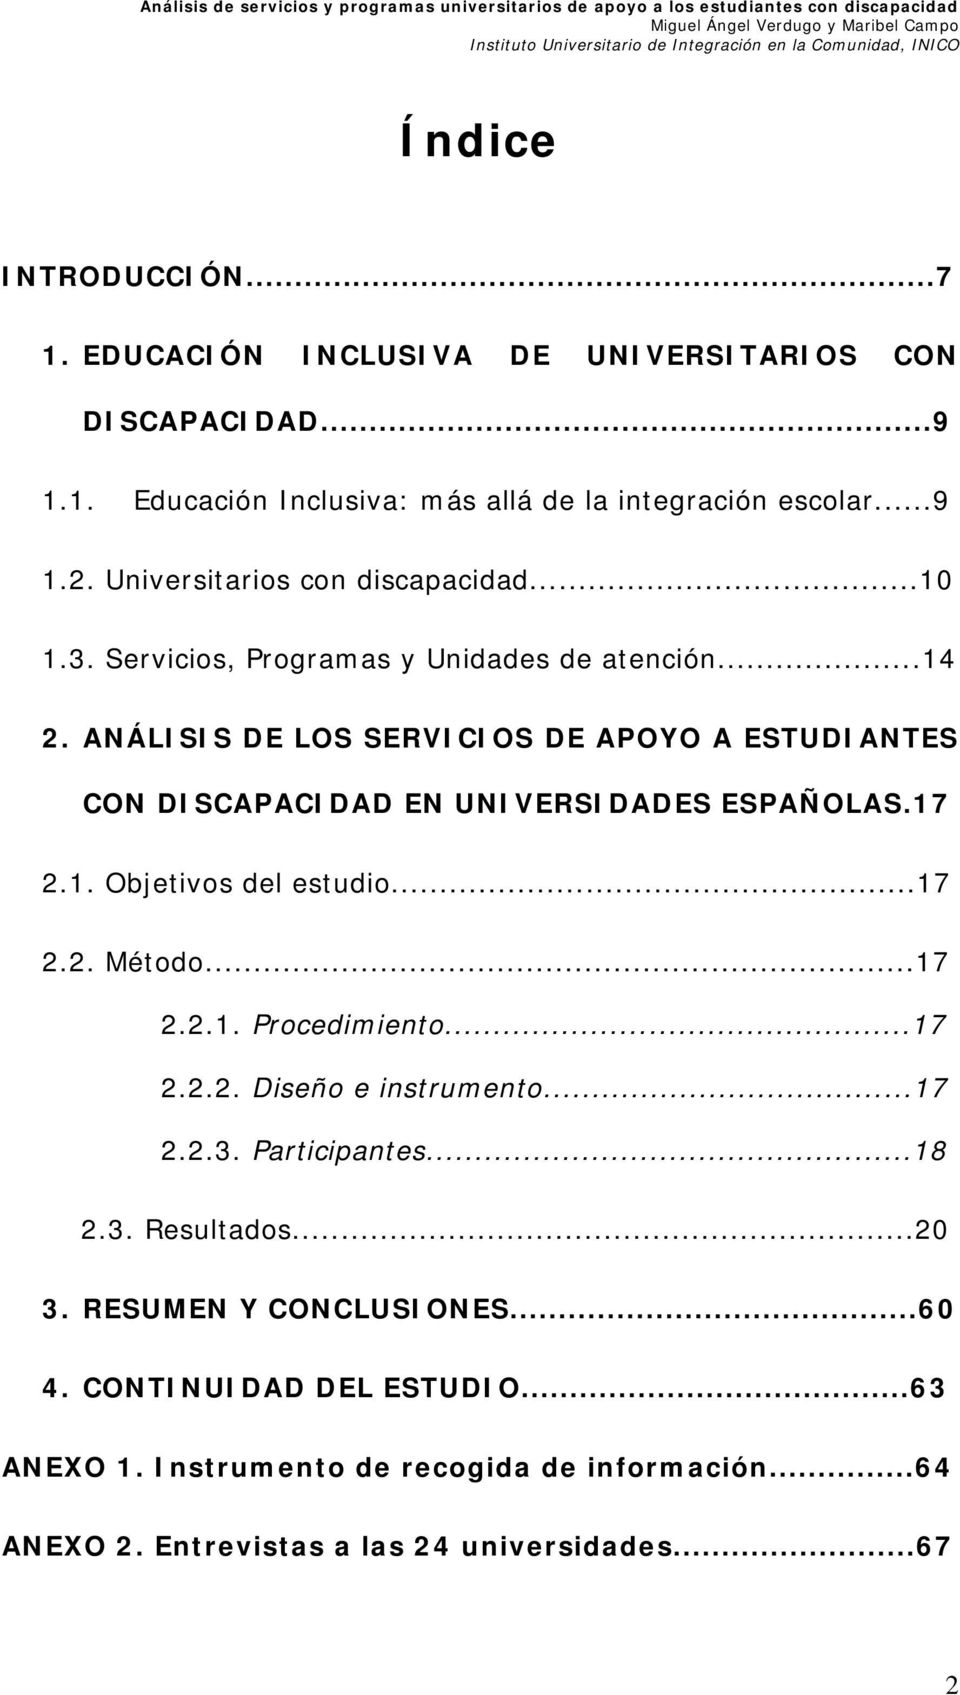 ANÁLISIS DE LOS SERVICIOS DE APOYO A ESTUDIANTES CON DISCAPACIDAD EN UNIVERSIDADES ESPAÑOLAS.17 2.1. Objetivos del estudio...17 2.2. Método...17 2.2.1. Procedimiento.